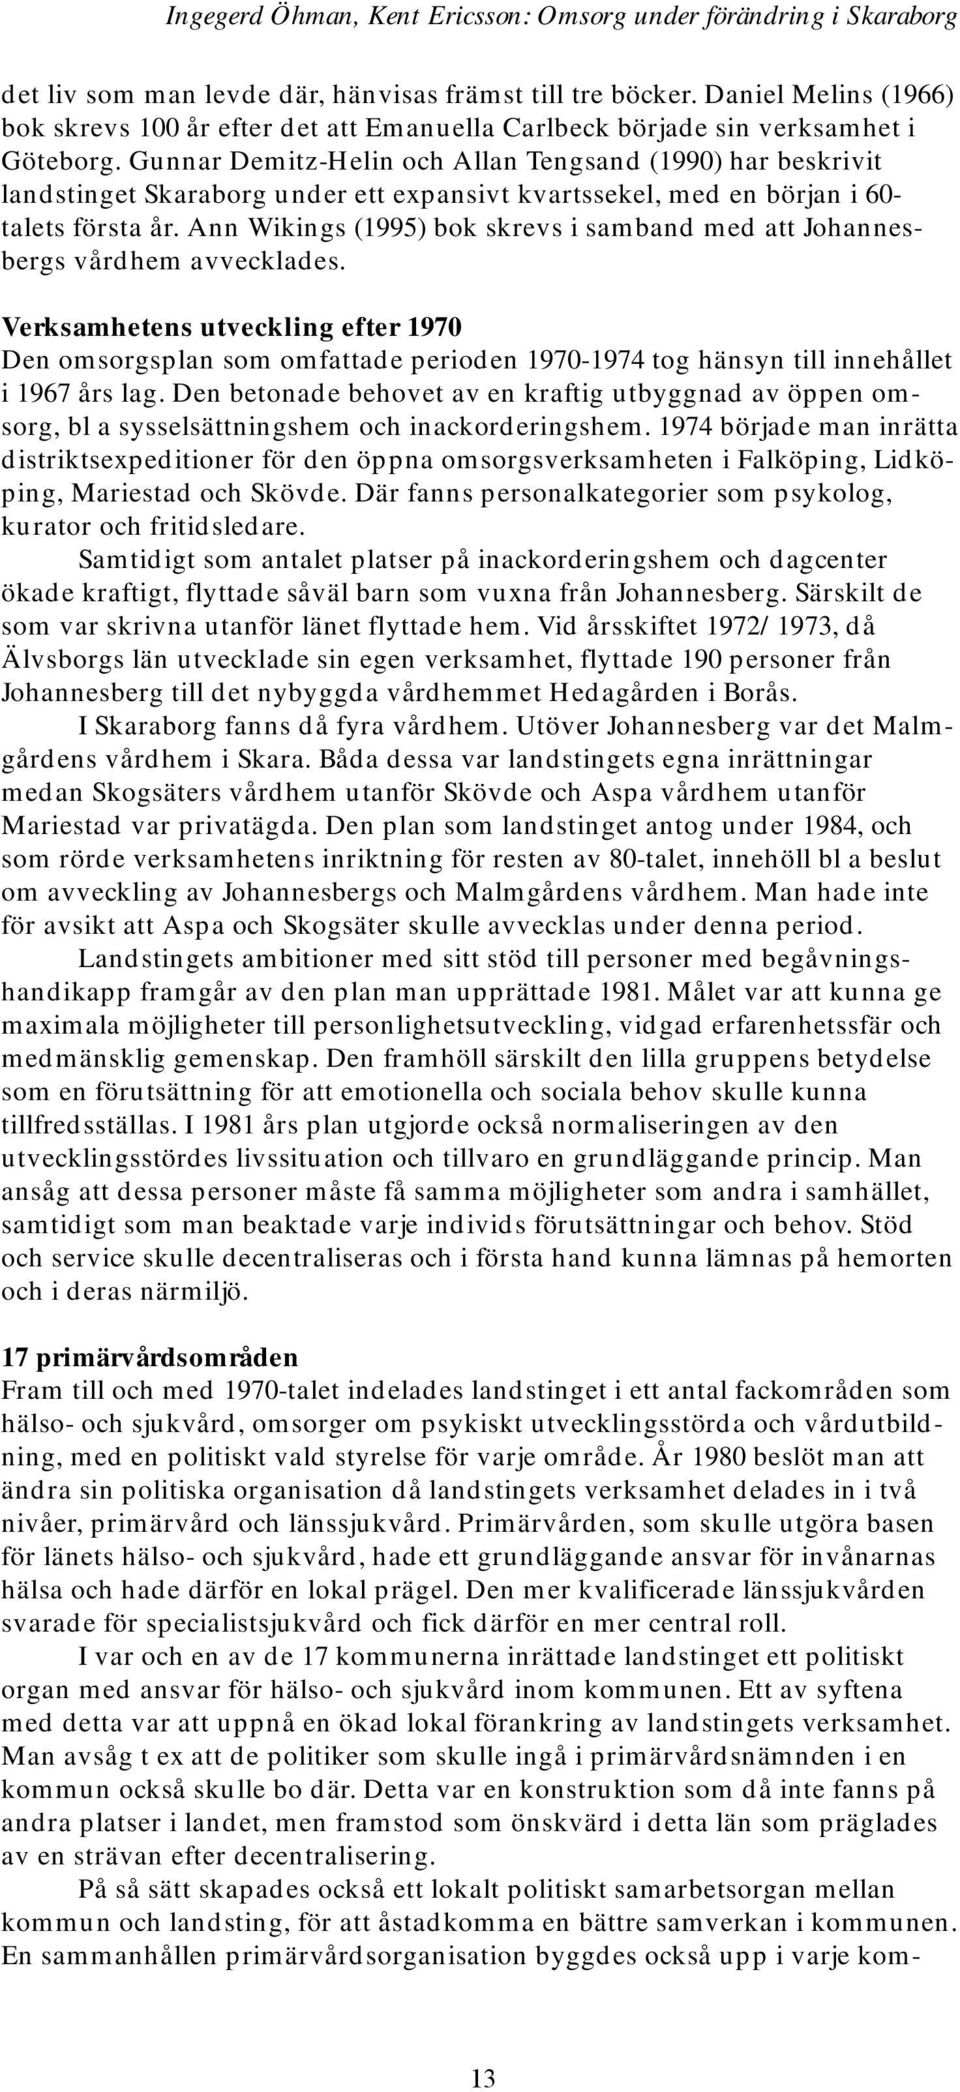 Gunnar Demitz-Helin och Allan Tengsand (1990) har beskrivit landstinget Skaraborg under ett expansivt kvartssekel, med en början i 60- talets första år.